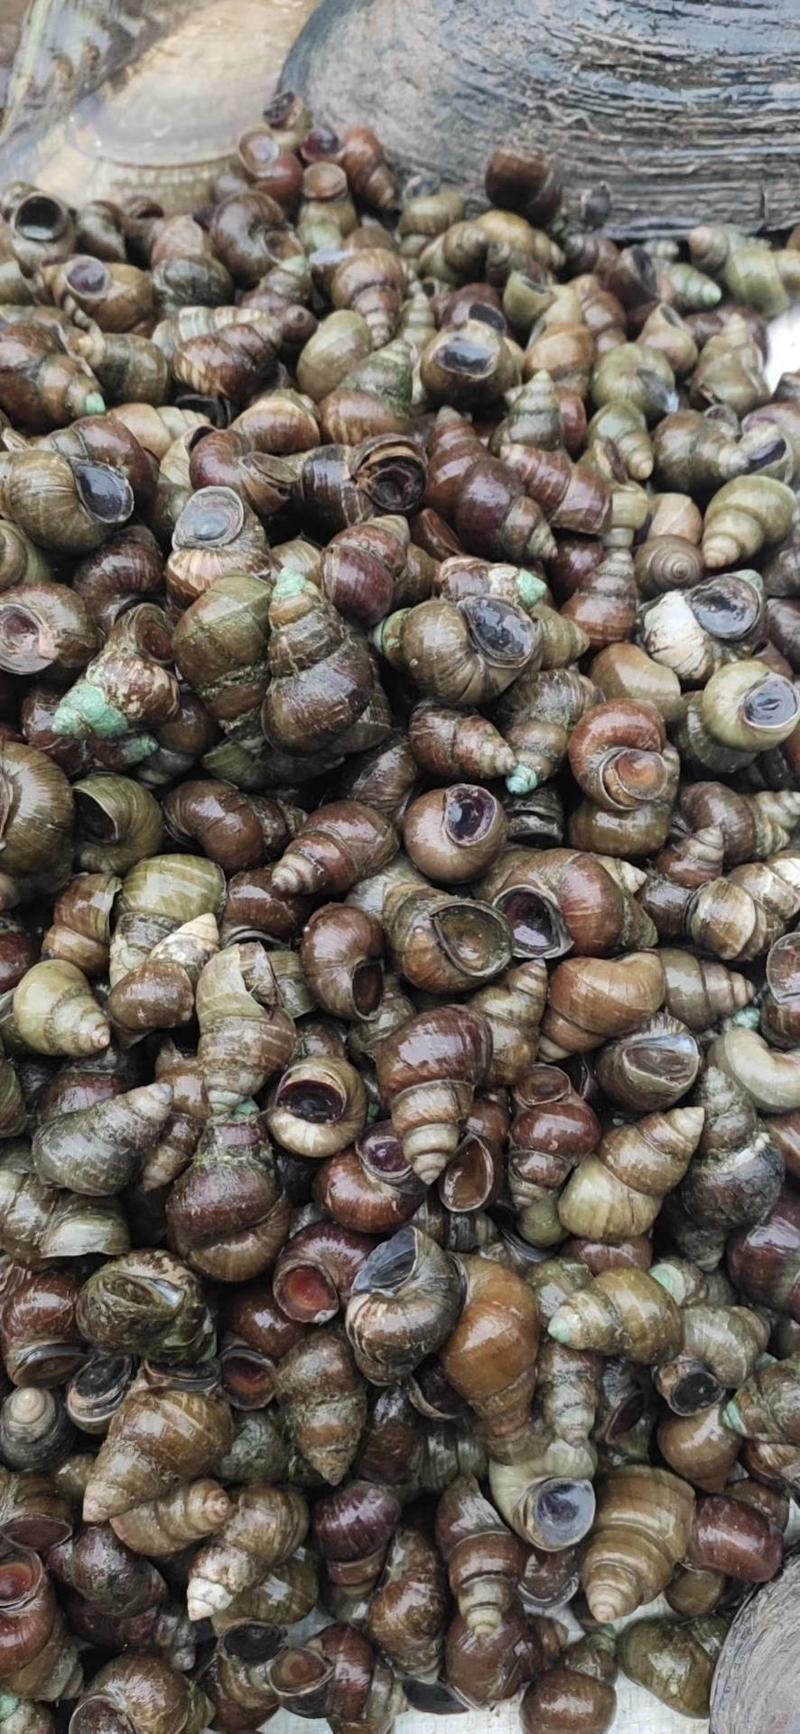 养殖螺蛳薄壳螺蛳食用螺蛳1.5以上不封顶水产